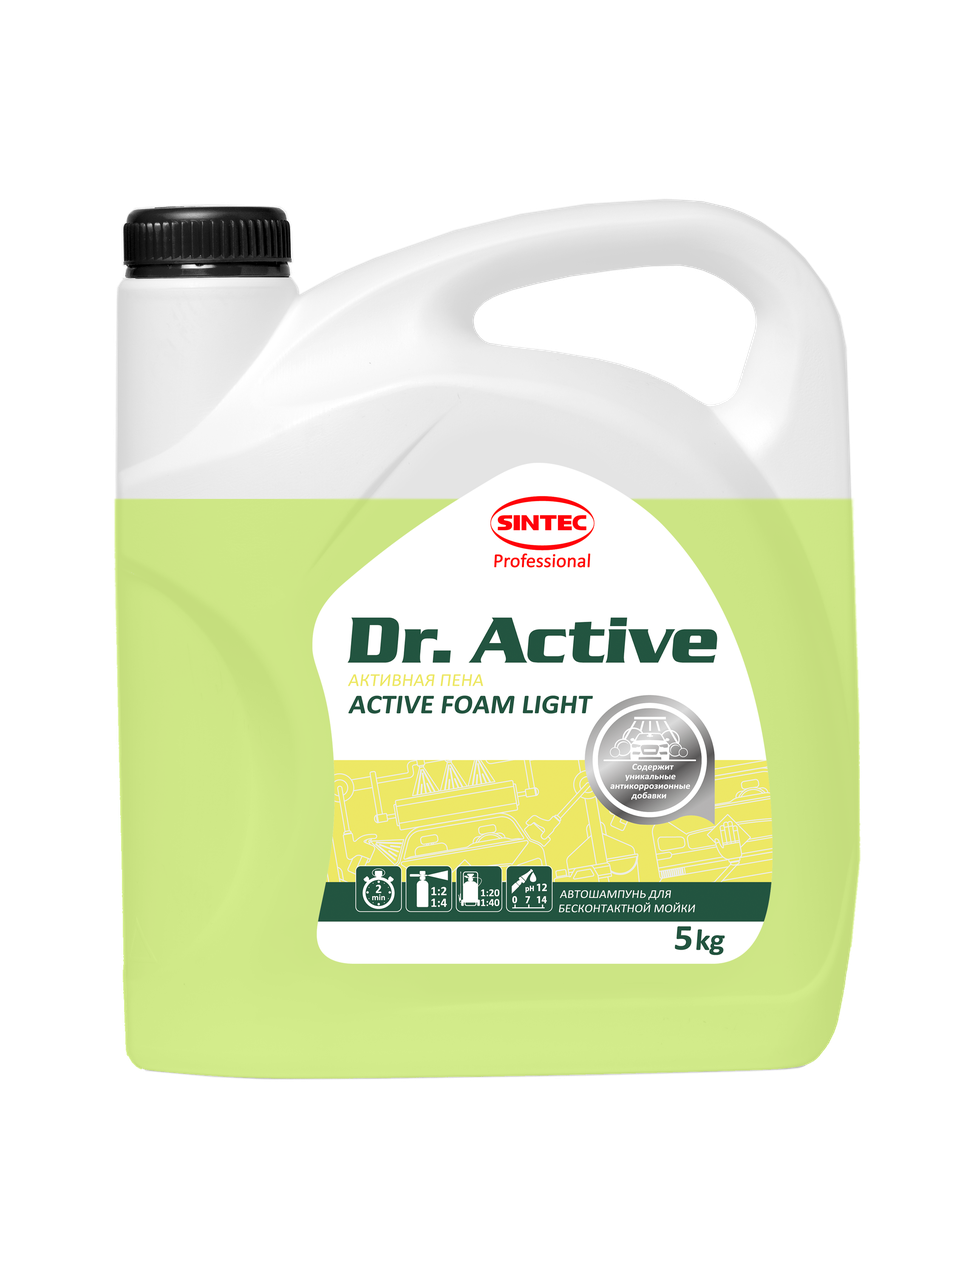 Активная пена. Sintec Dr. Active «Active Foam Light» 5кг, Слабощелочное средство для бесконтактной мойки